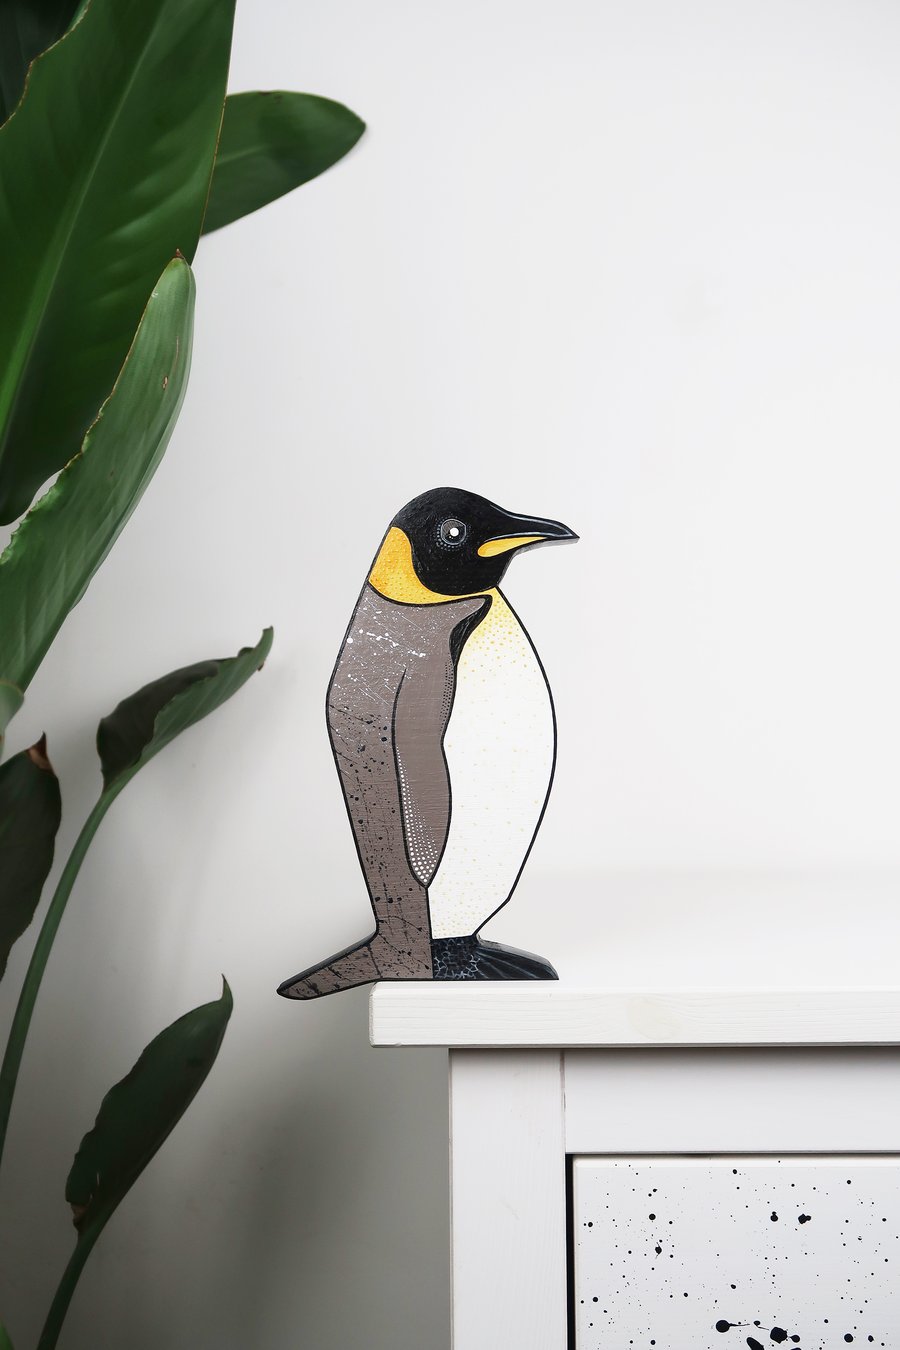 Penguin door topper, emperor penguin decoration for door or shelf.